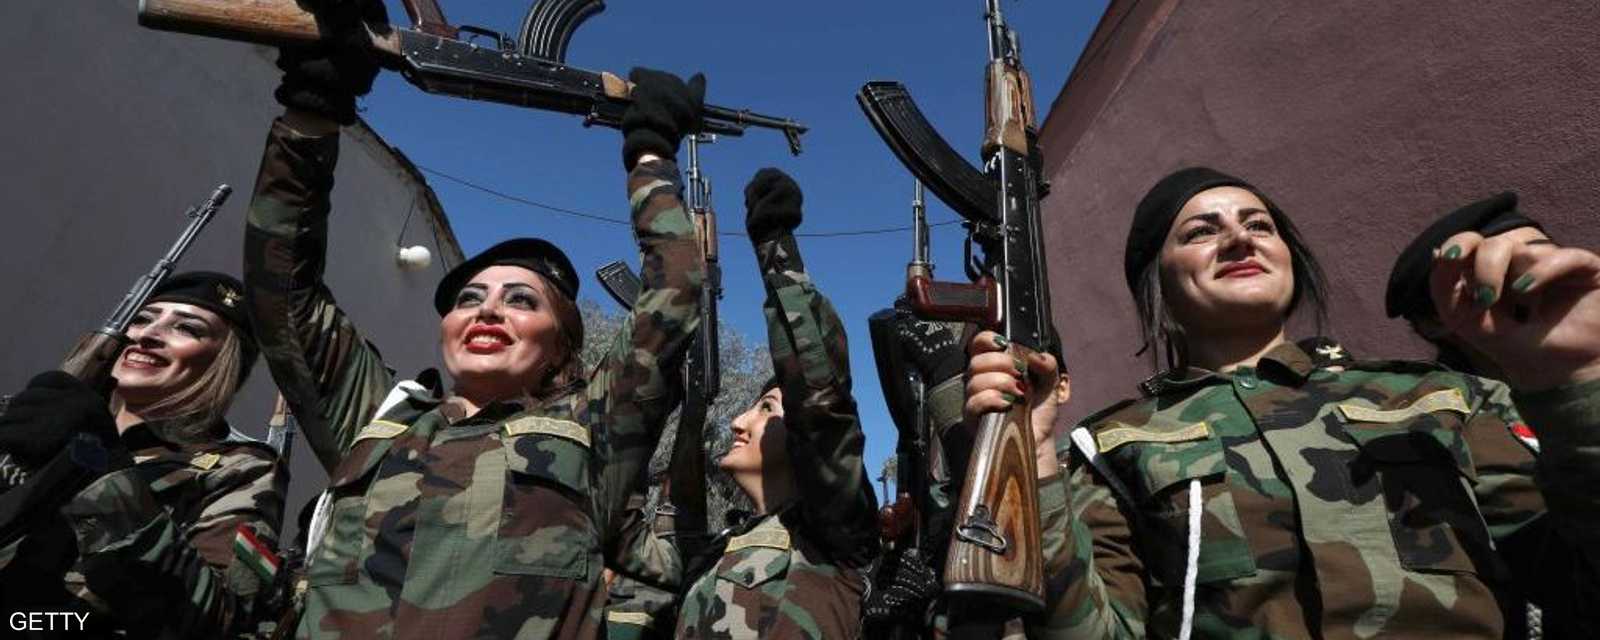 الكرديات لهن مساهمات فاعلة في القتال بسوريا والعراق